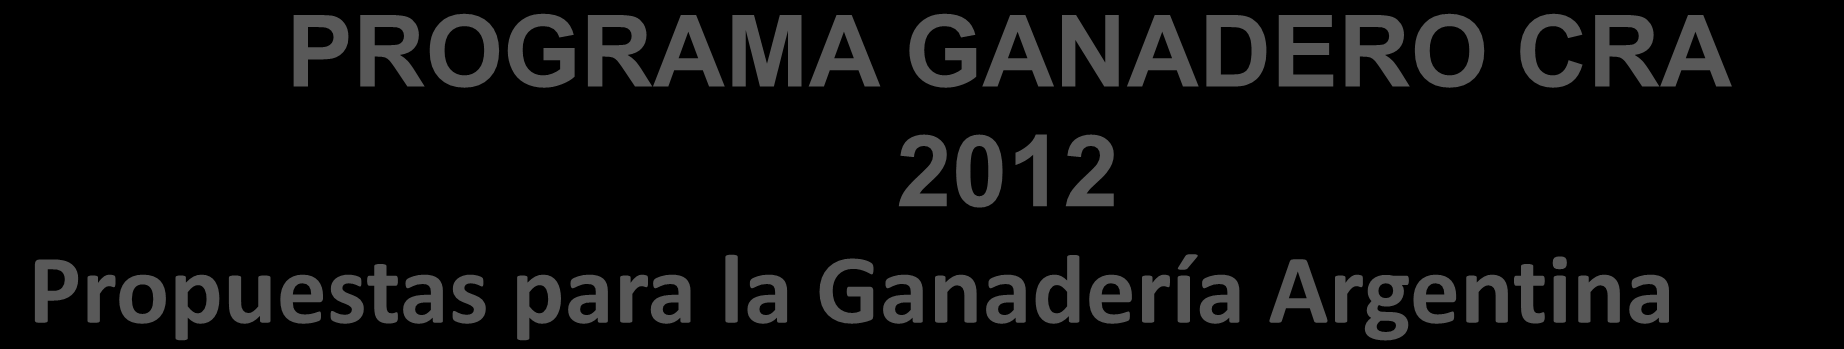 PROGRAMA GANADERO CRA IV. Comercialización de Carnes: 2012 Propuestas para la Ganadería Argentina 8. Rendimientos de faena.